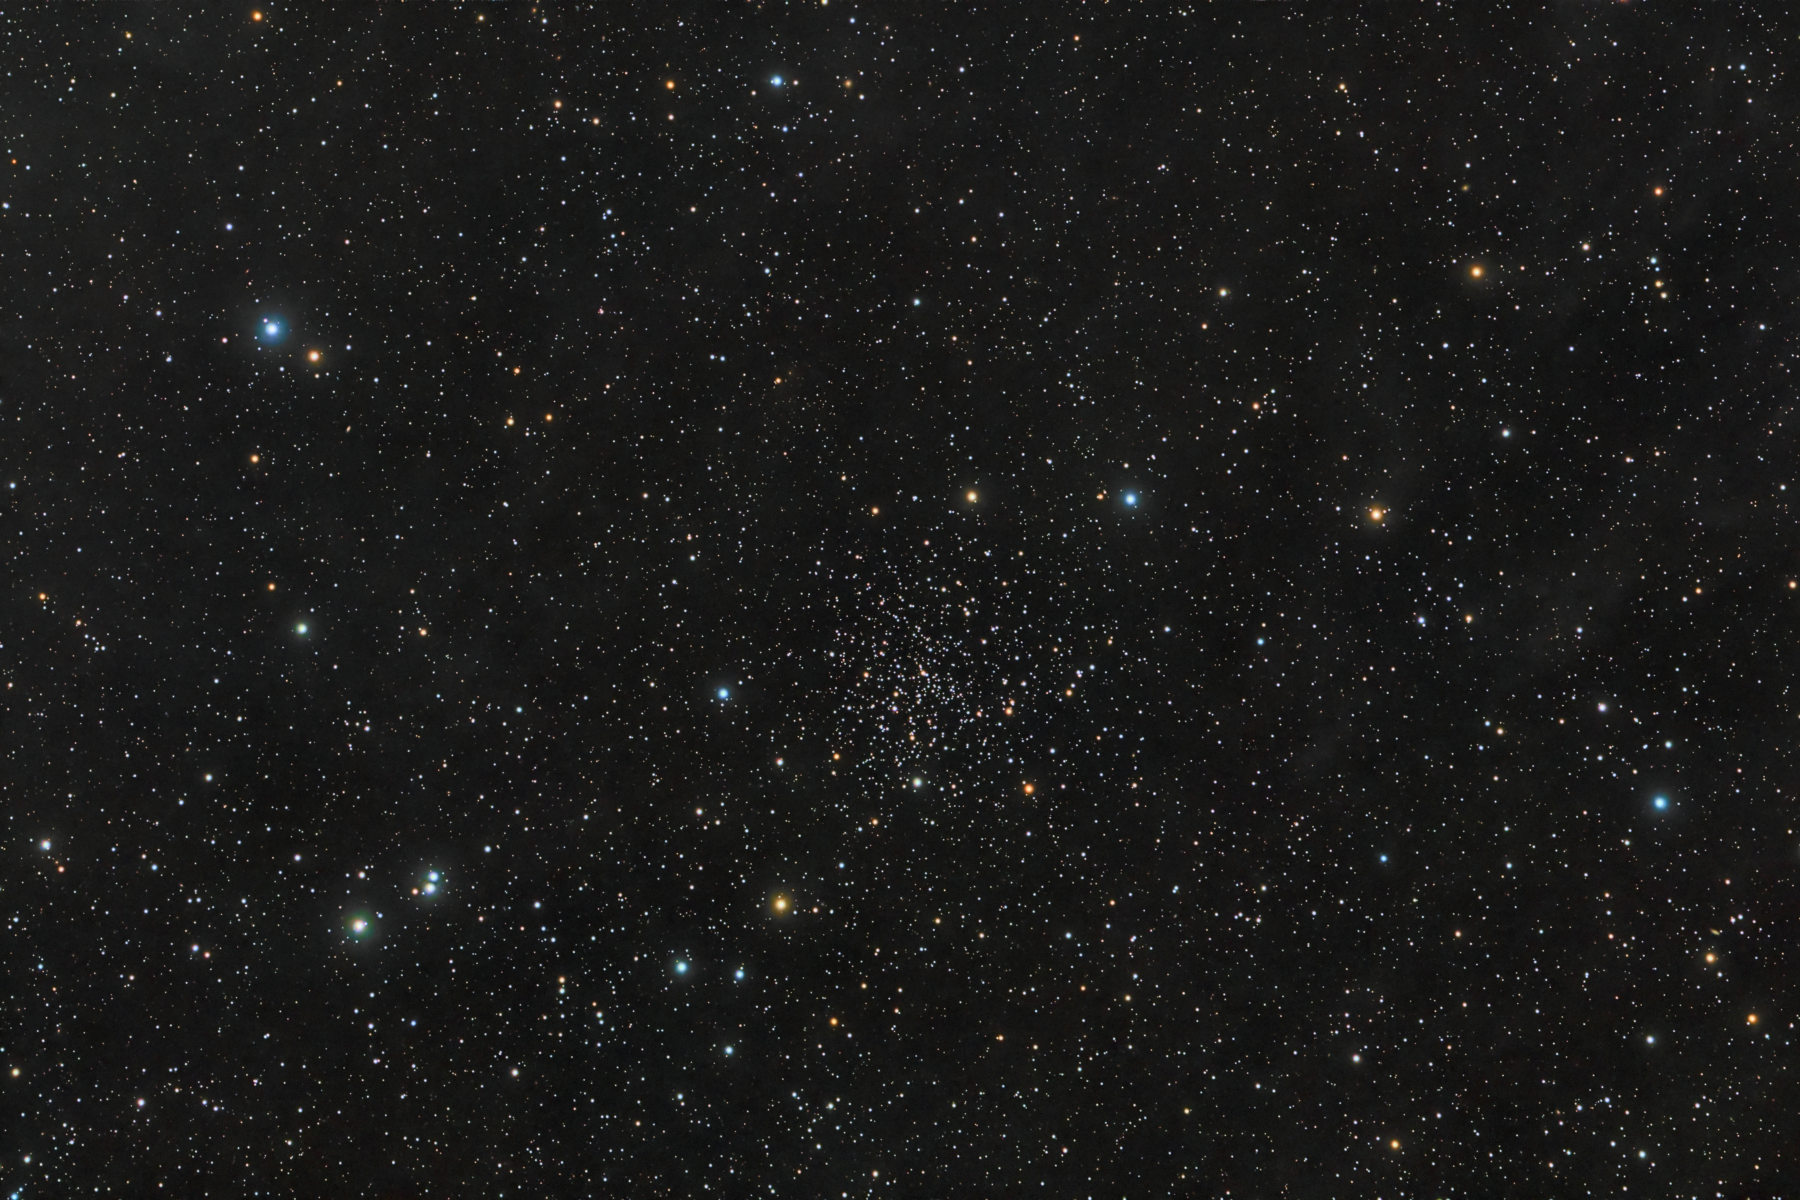 NGC 188 in Cepheus